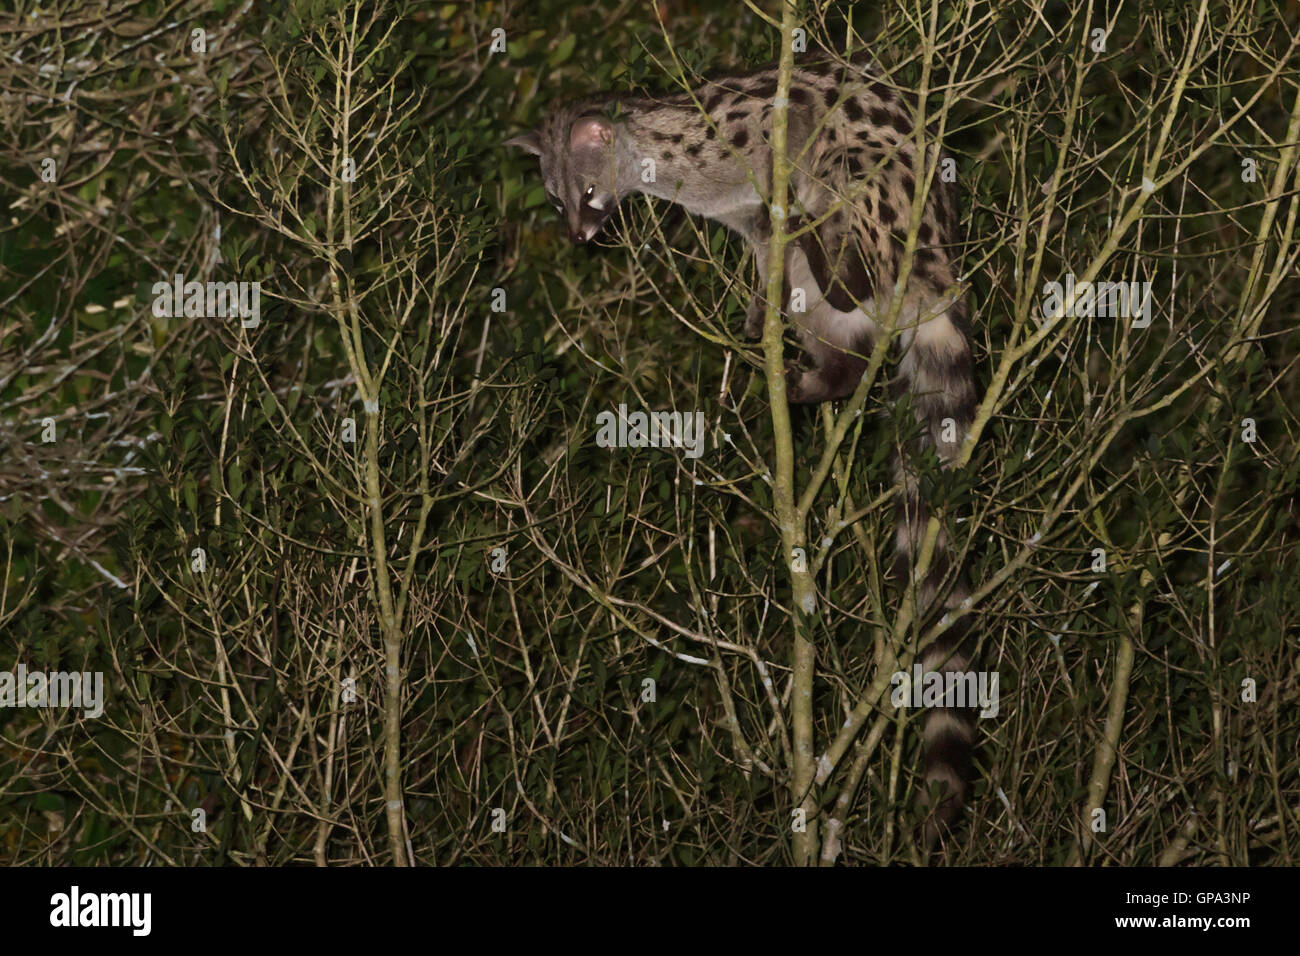 Common Genet (Genetta genetta) climbing on a tree at night Stock Photo